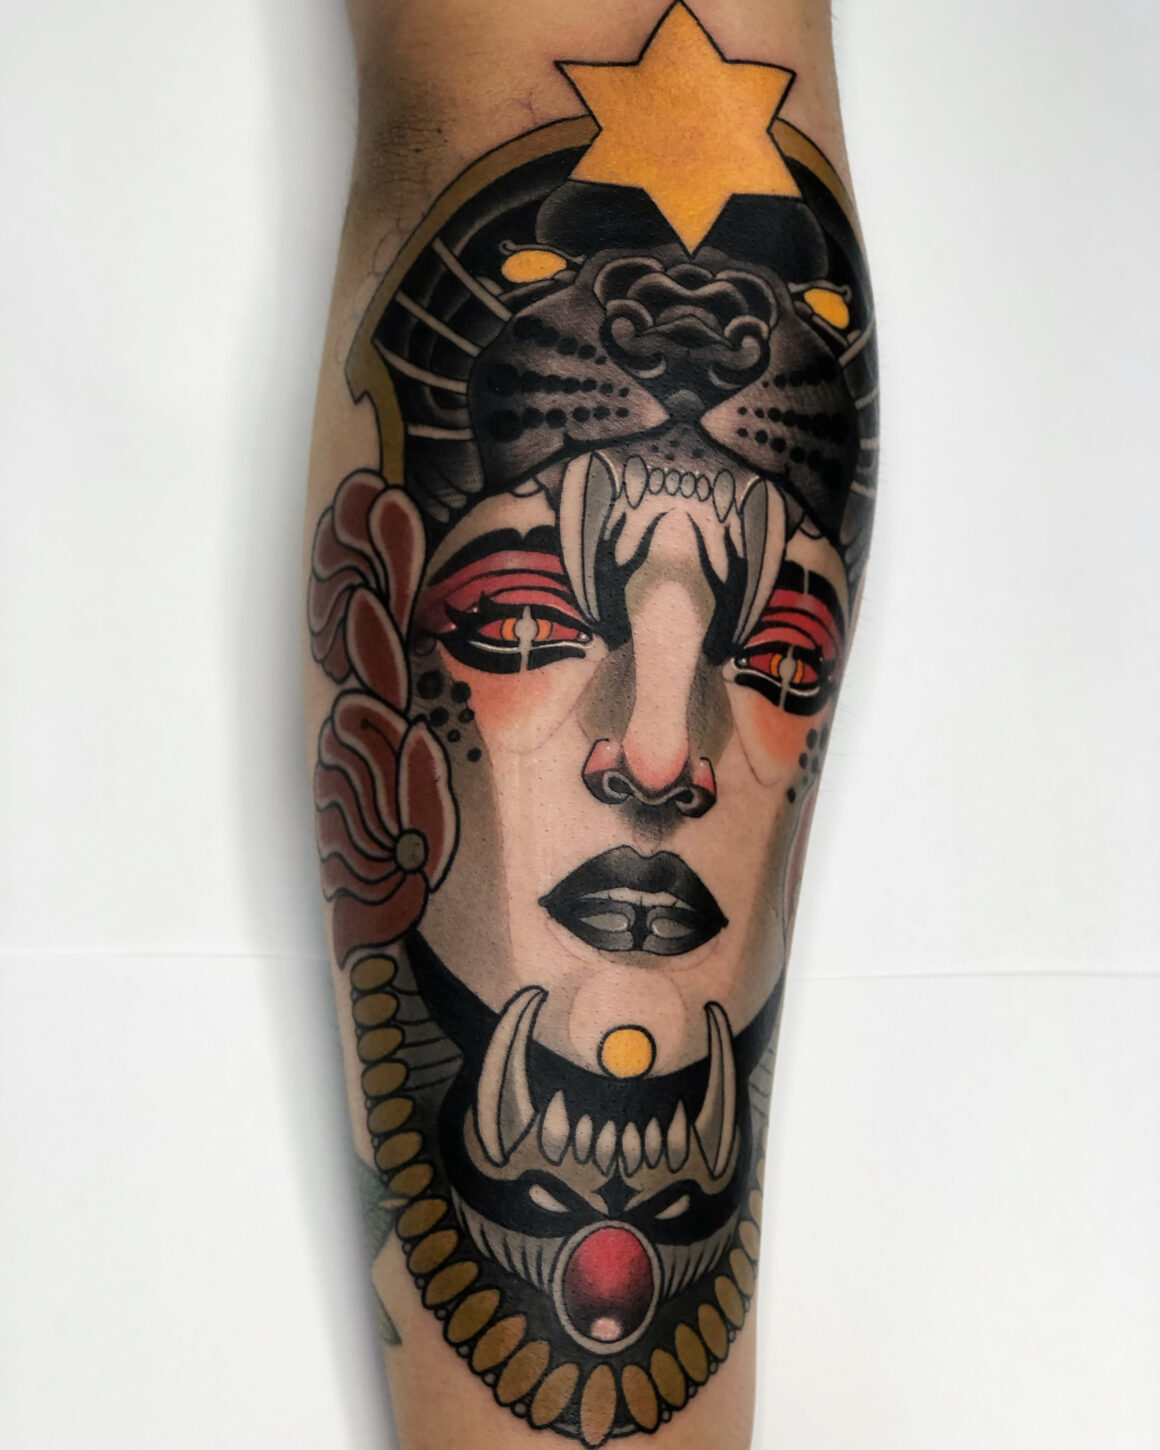 Chris Arroyo, Nueva Sangre Tattoo, Ciudad de Mexico, Mexico